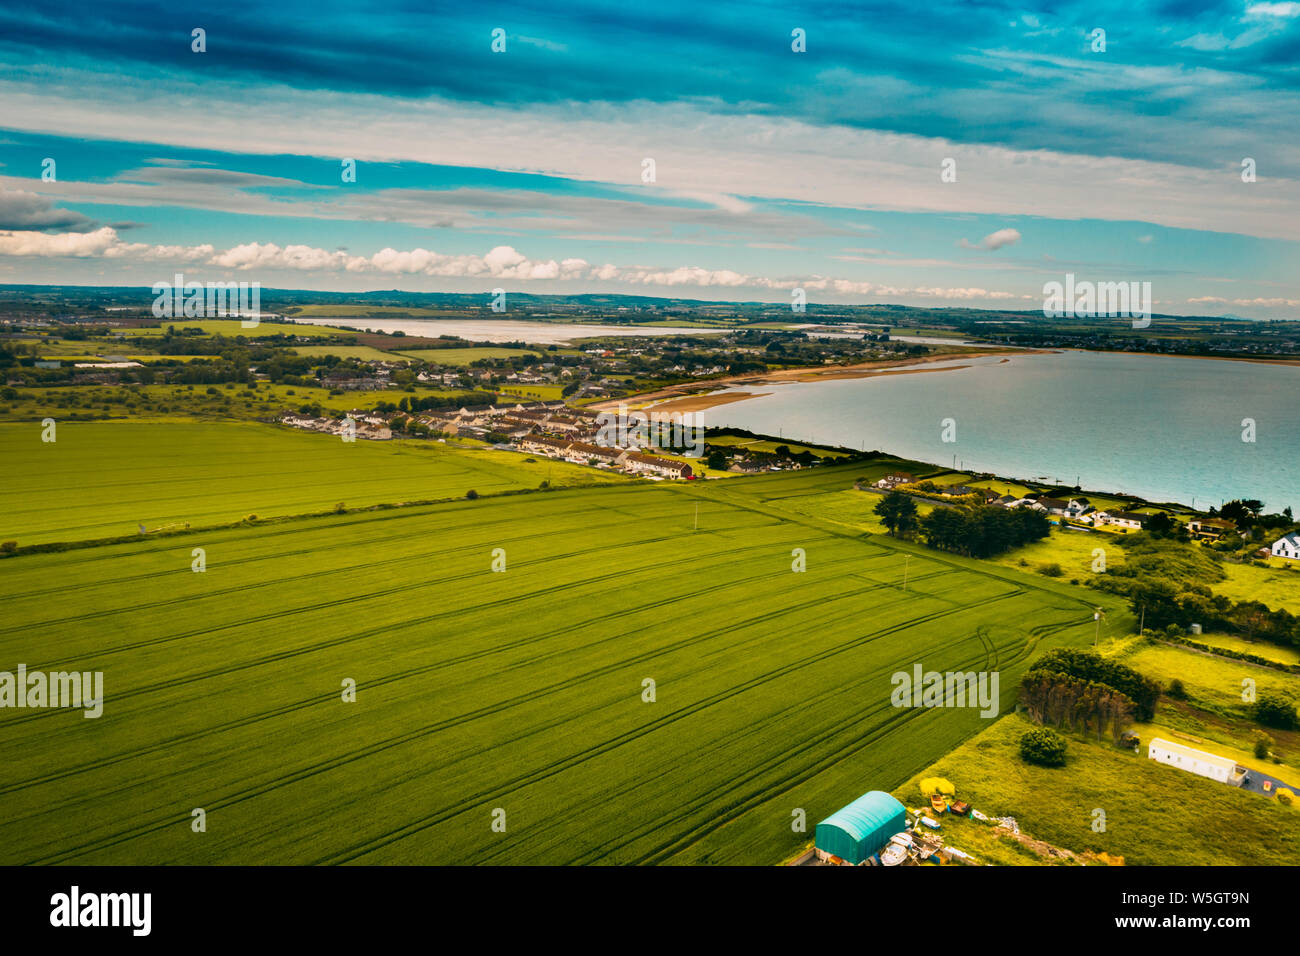 Vue aérienne du paysage de Donabate région de Dublin, Irlande. Banque D'Images